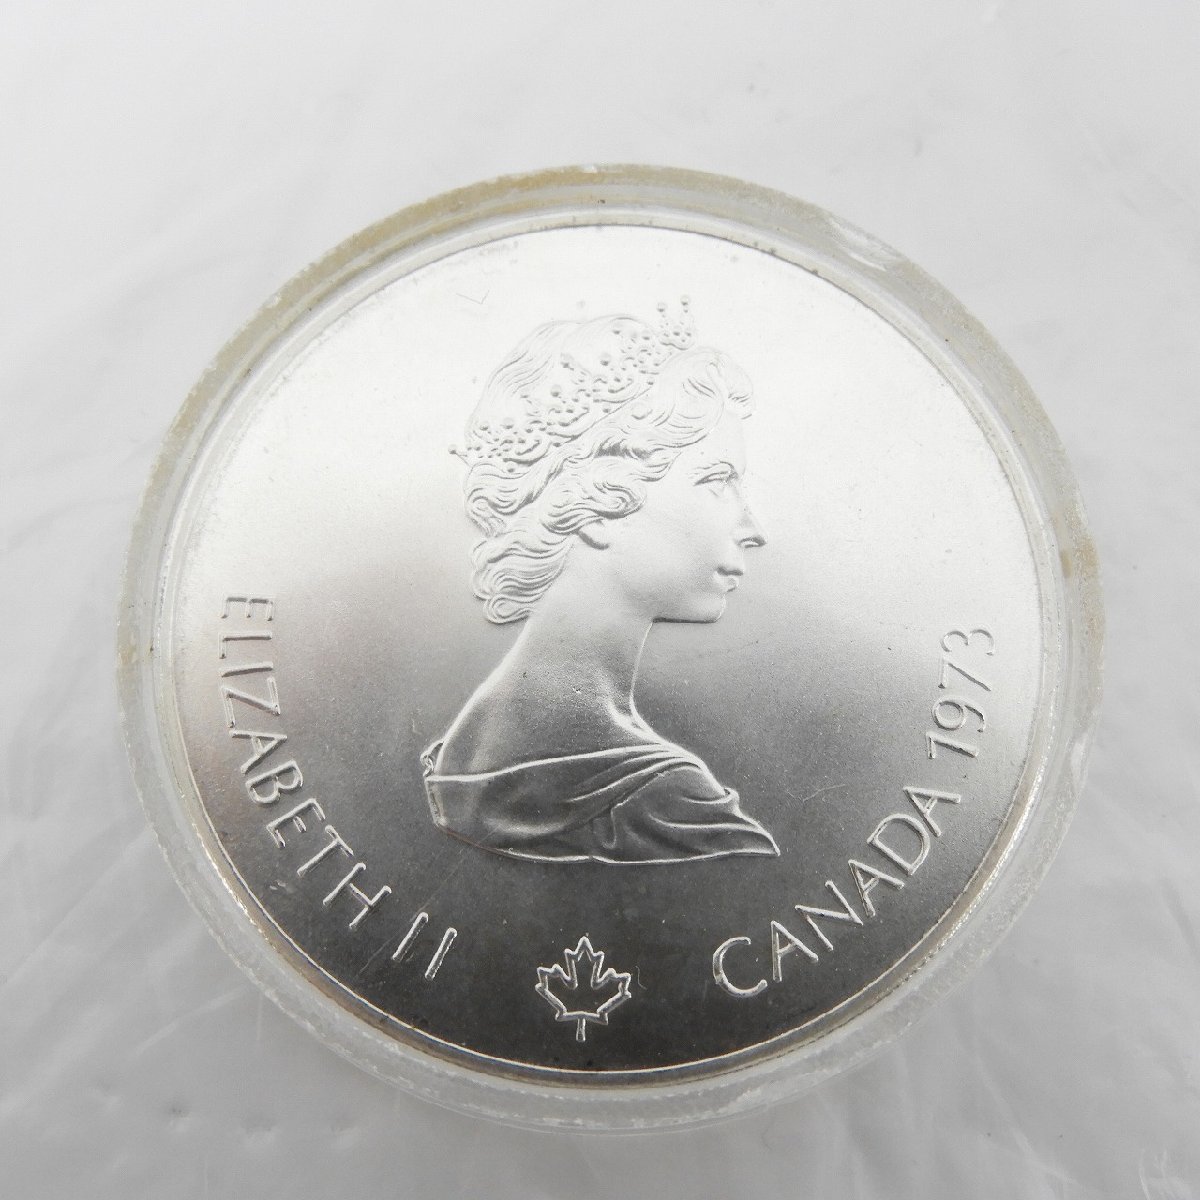 【記念貨幣】モントリオールオリンピック 1976 記念銀貨 エリザベス女王 5ドル 2枚セット 903324300 1104_画像4